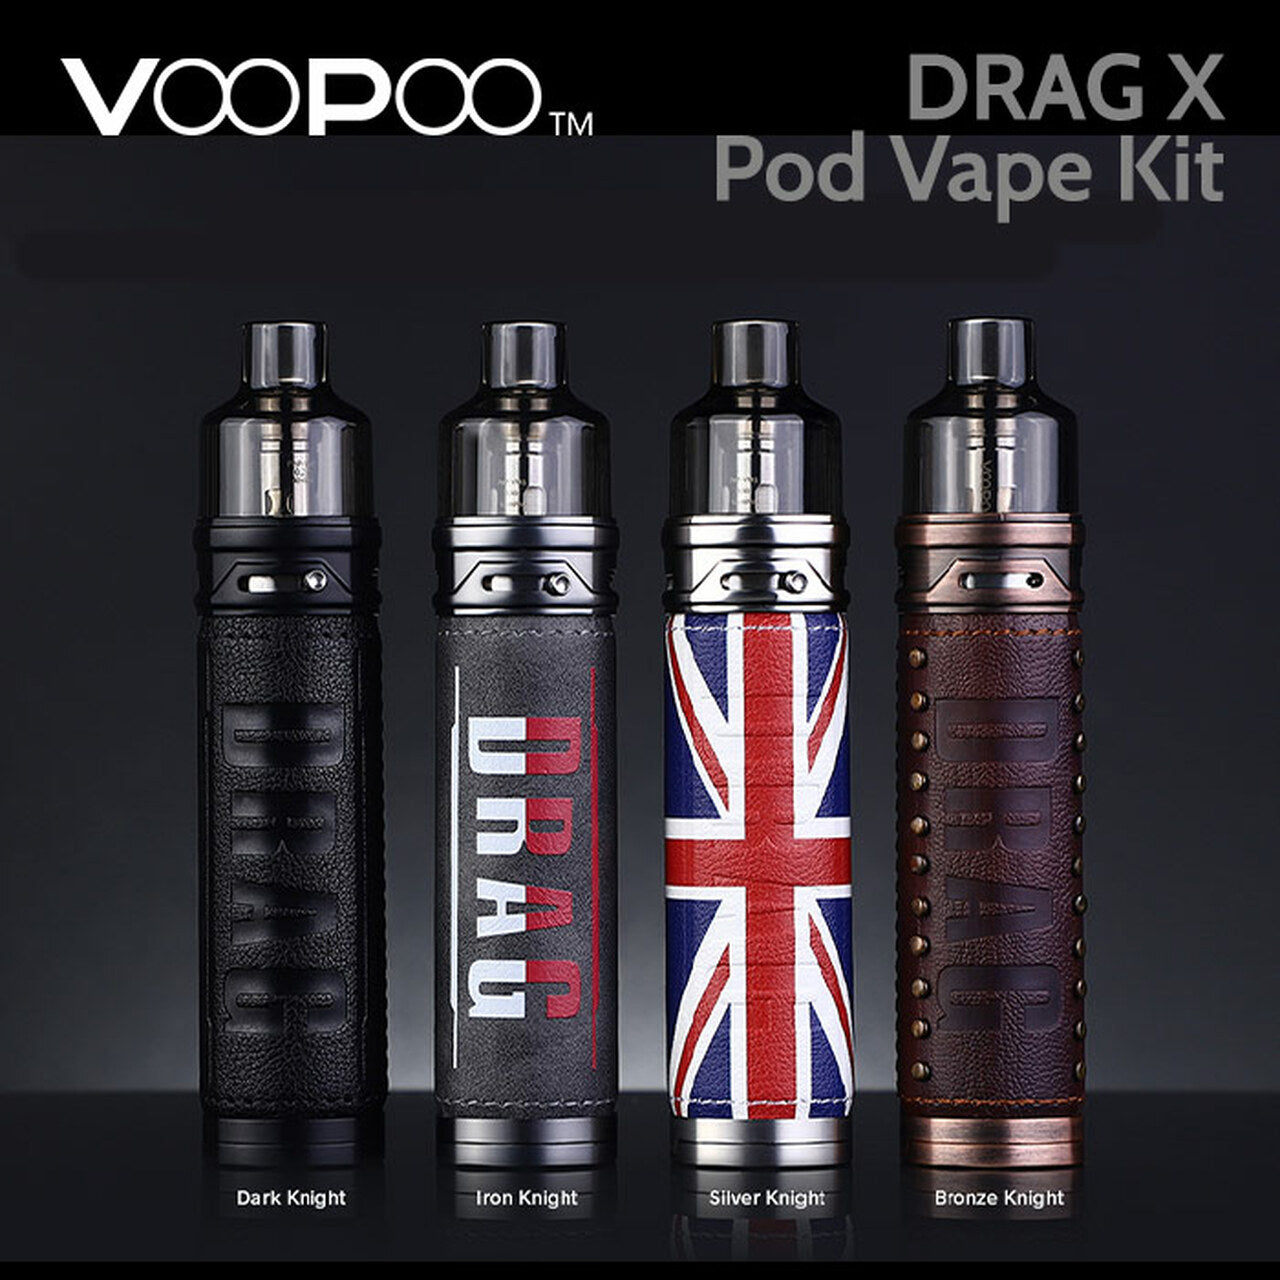 Drag X Kit Voopoo Cigarrillo Electronico